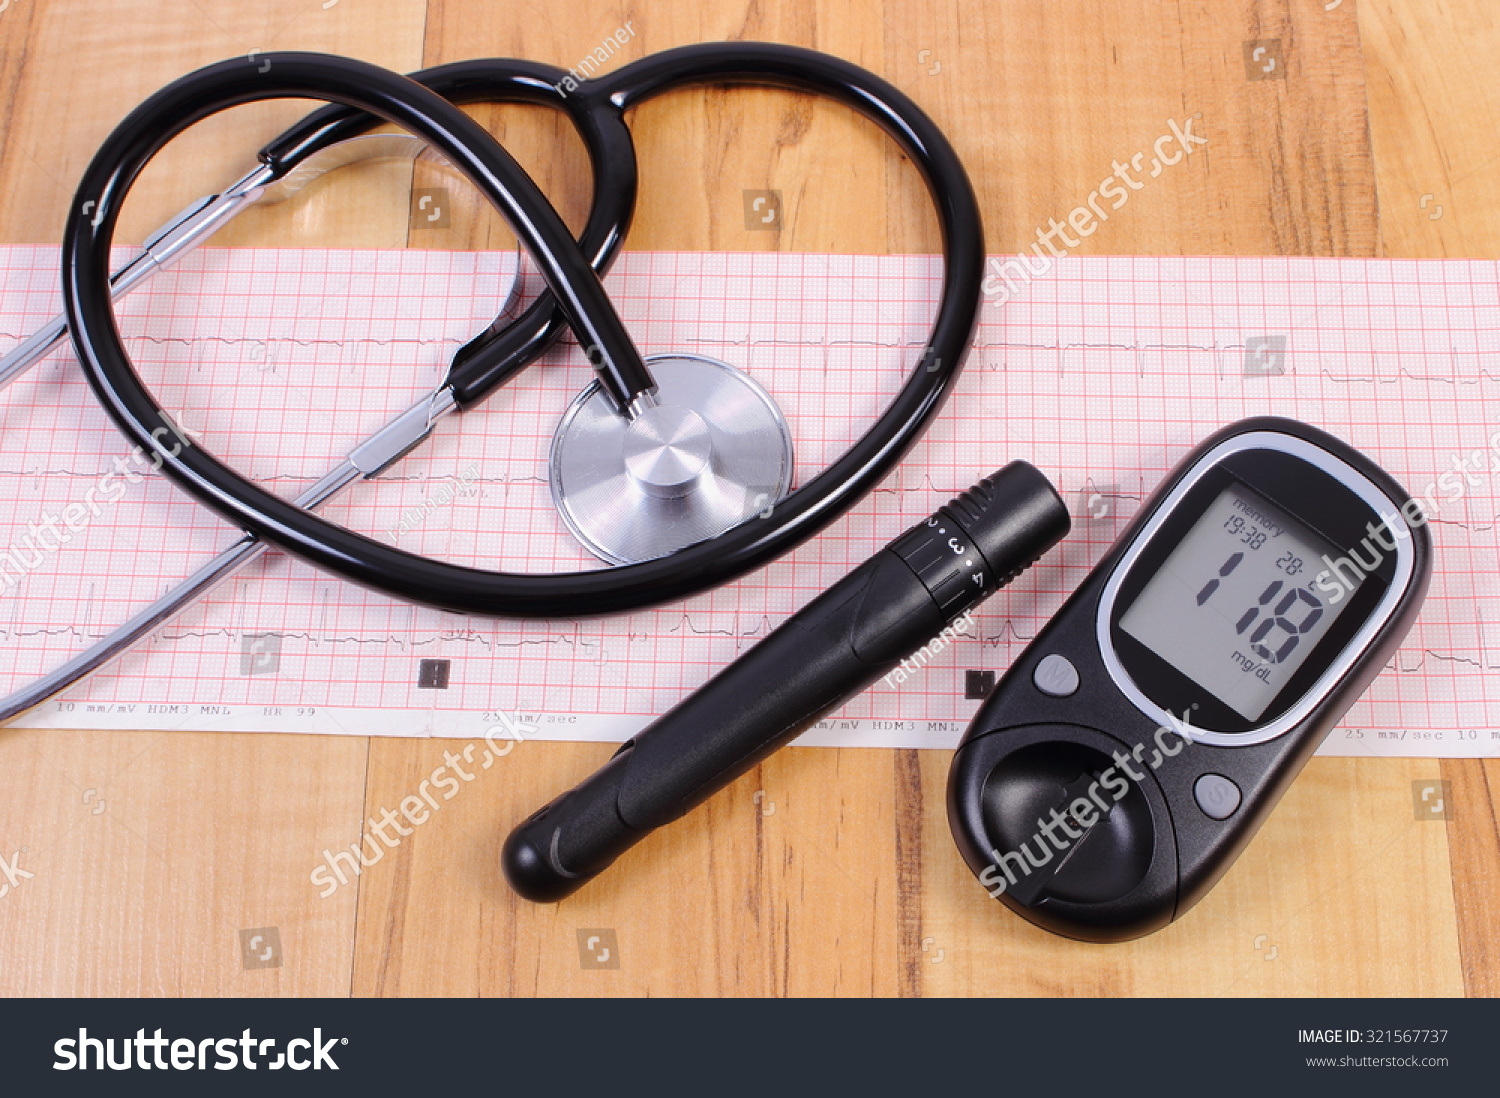 血糖仪柳叶刀设备和医用听诊器躺在心电图图形